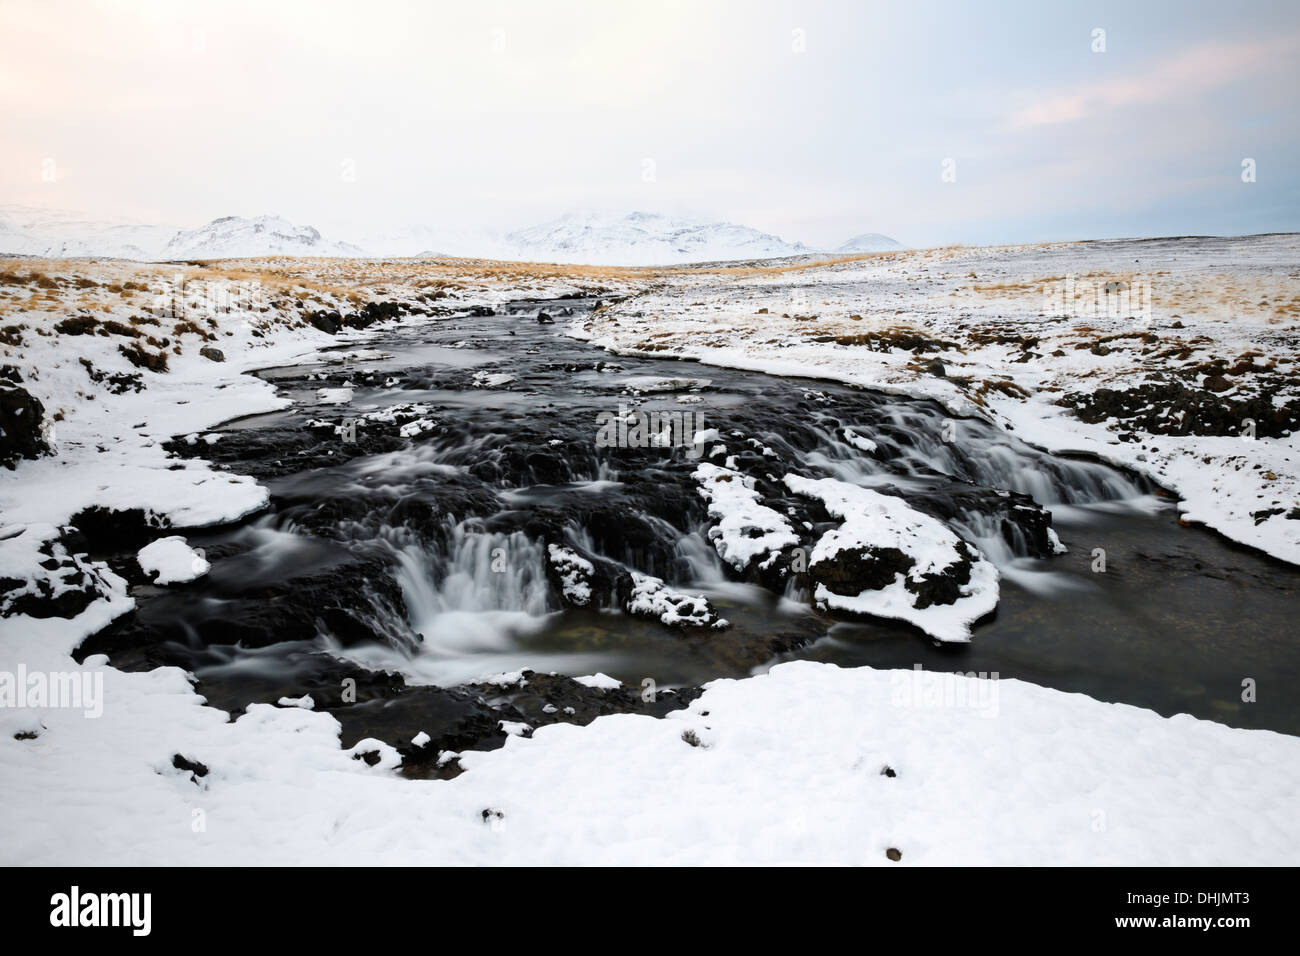 Vue sur un ruisseau avec une cascade dans un paysage islandais. Banque D'Images